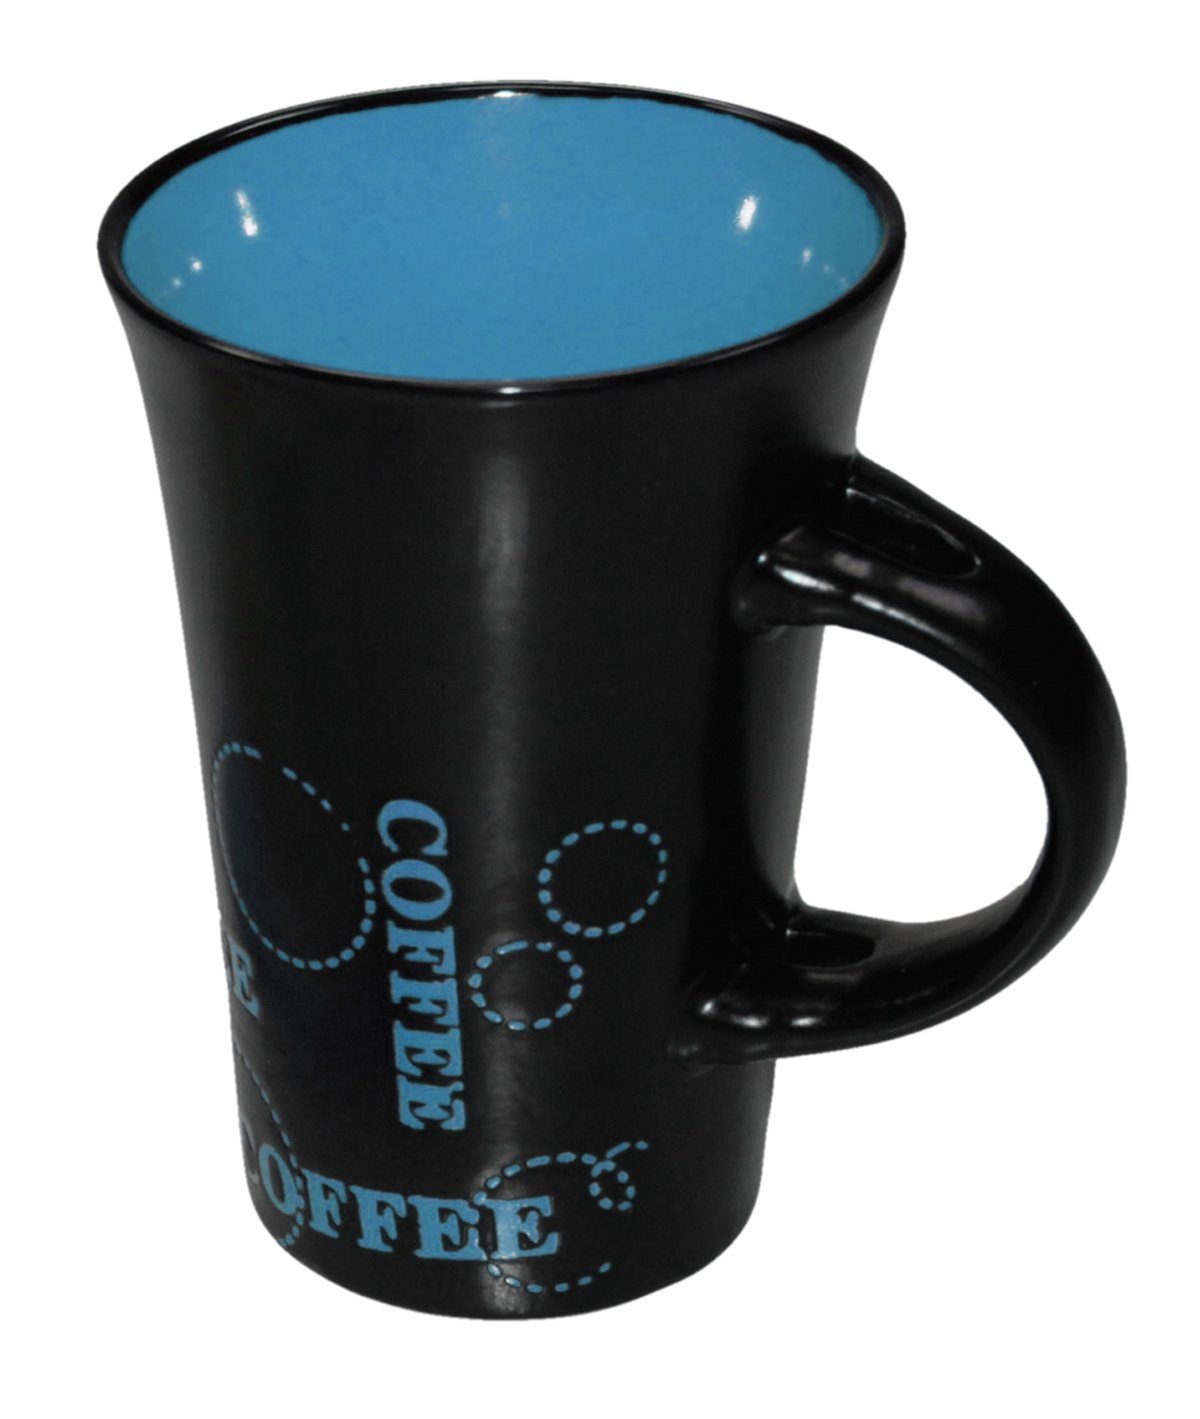 Haus und Deko Geschirr-Set Keramik Kaffeebecher Kaffeetasse schwarz bunt XL Tasse Becher passend (1-tlg), Keramik Blau